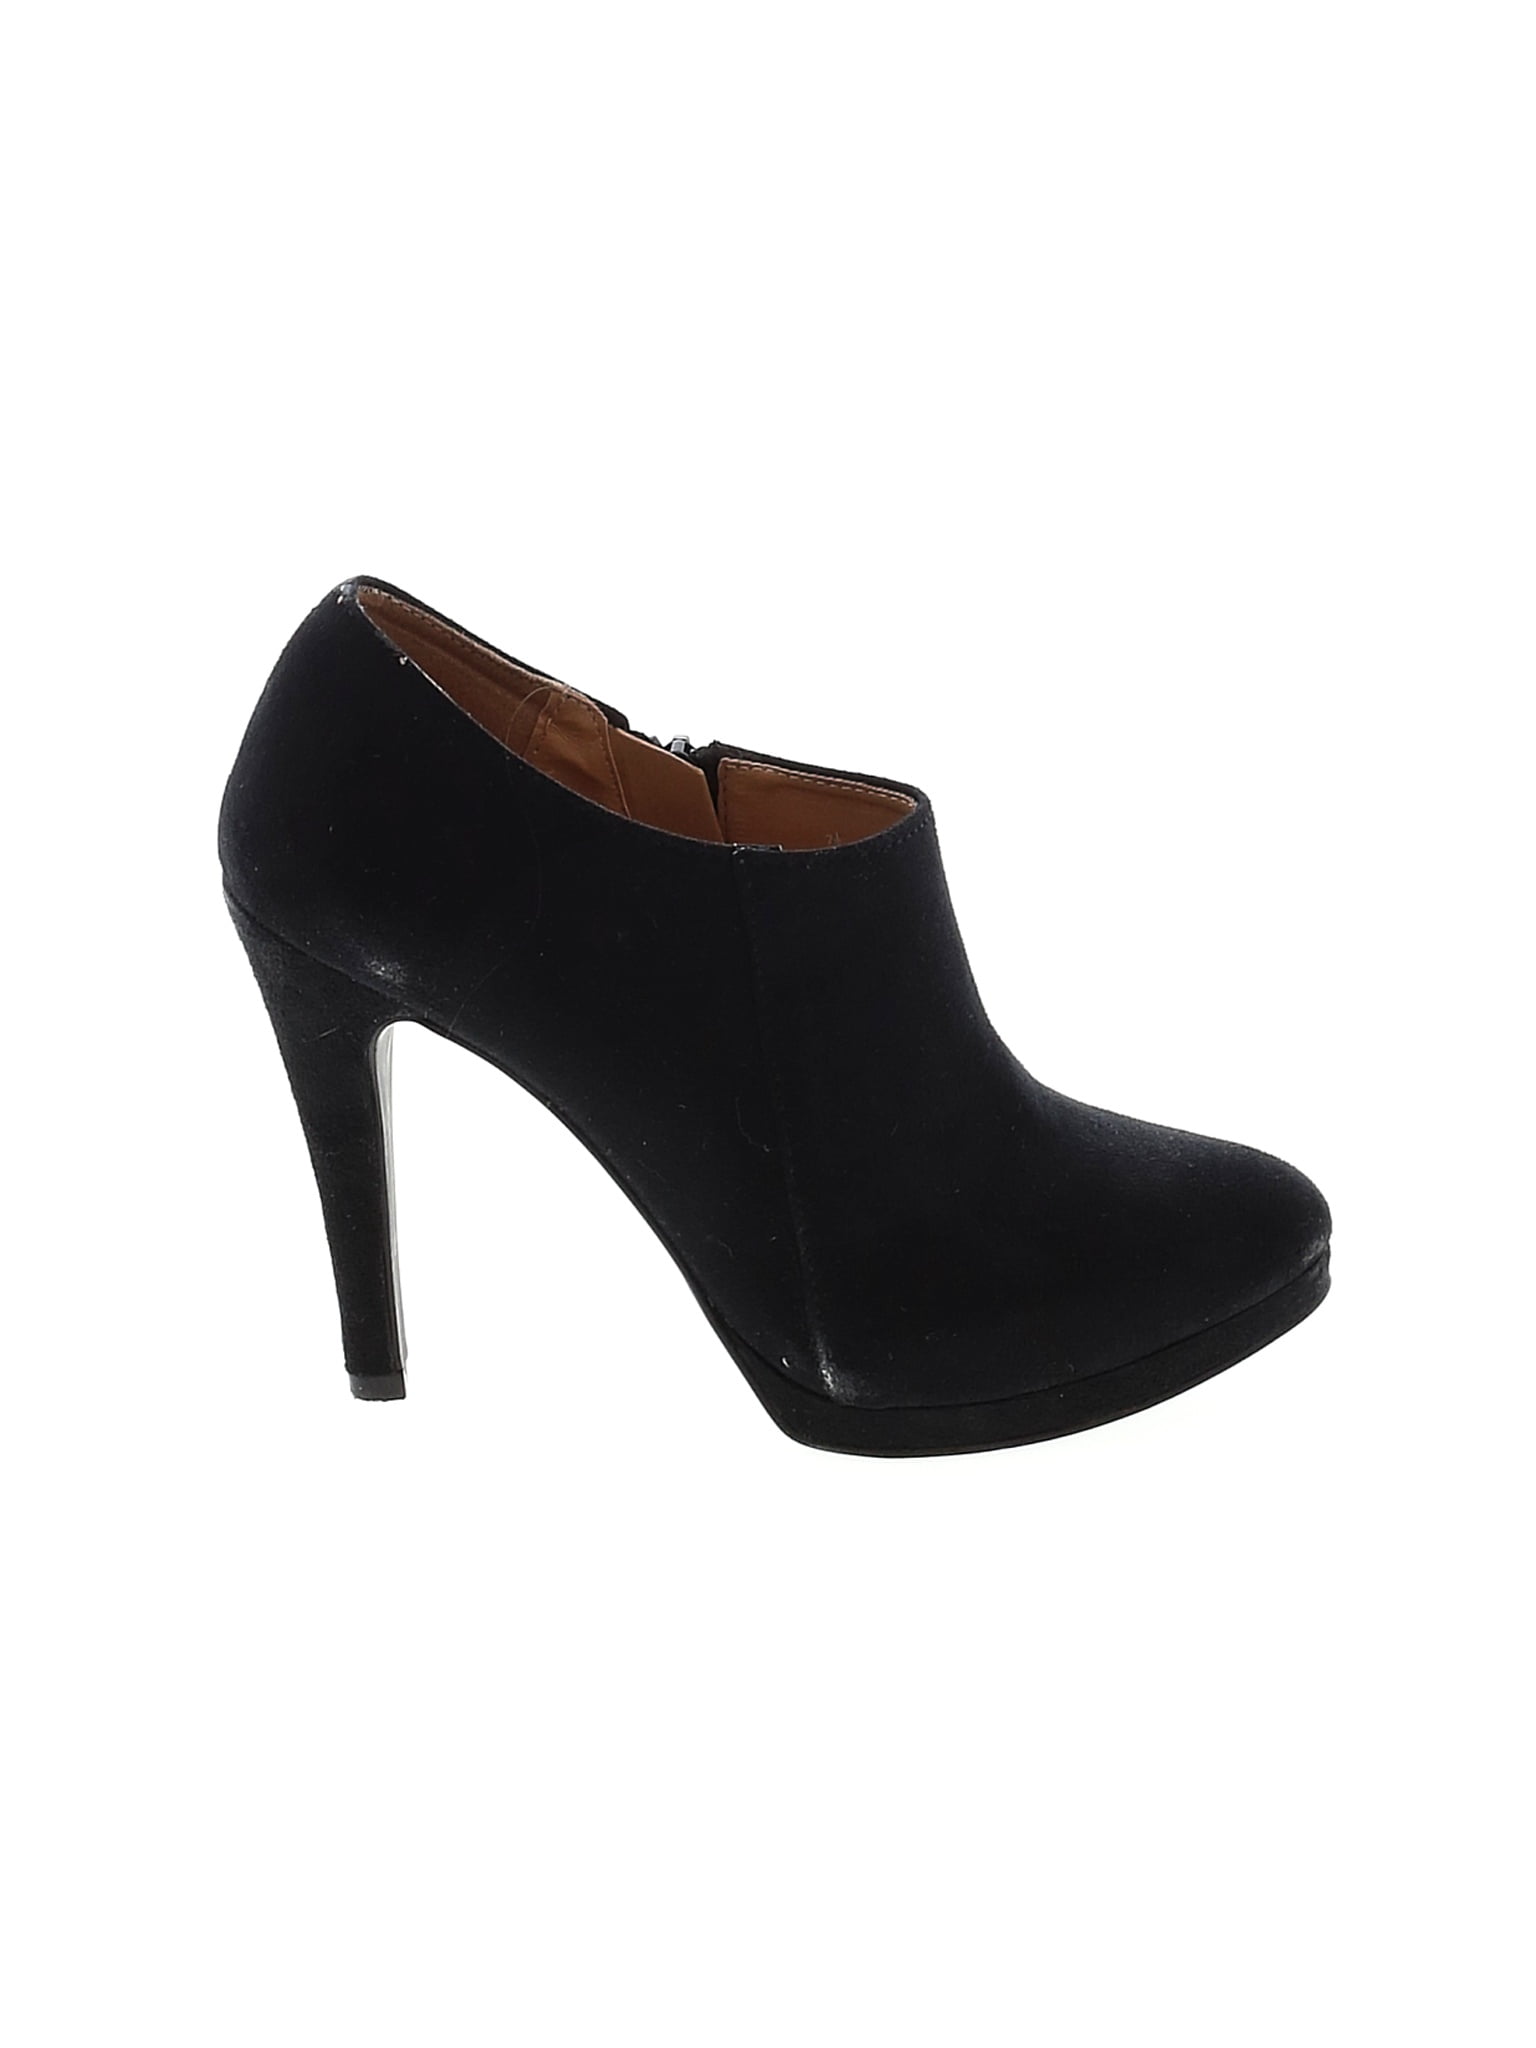 Buy > merona shoes heels > in stock